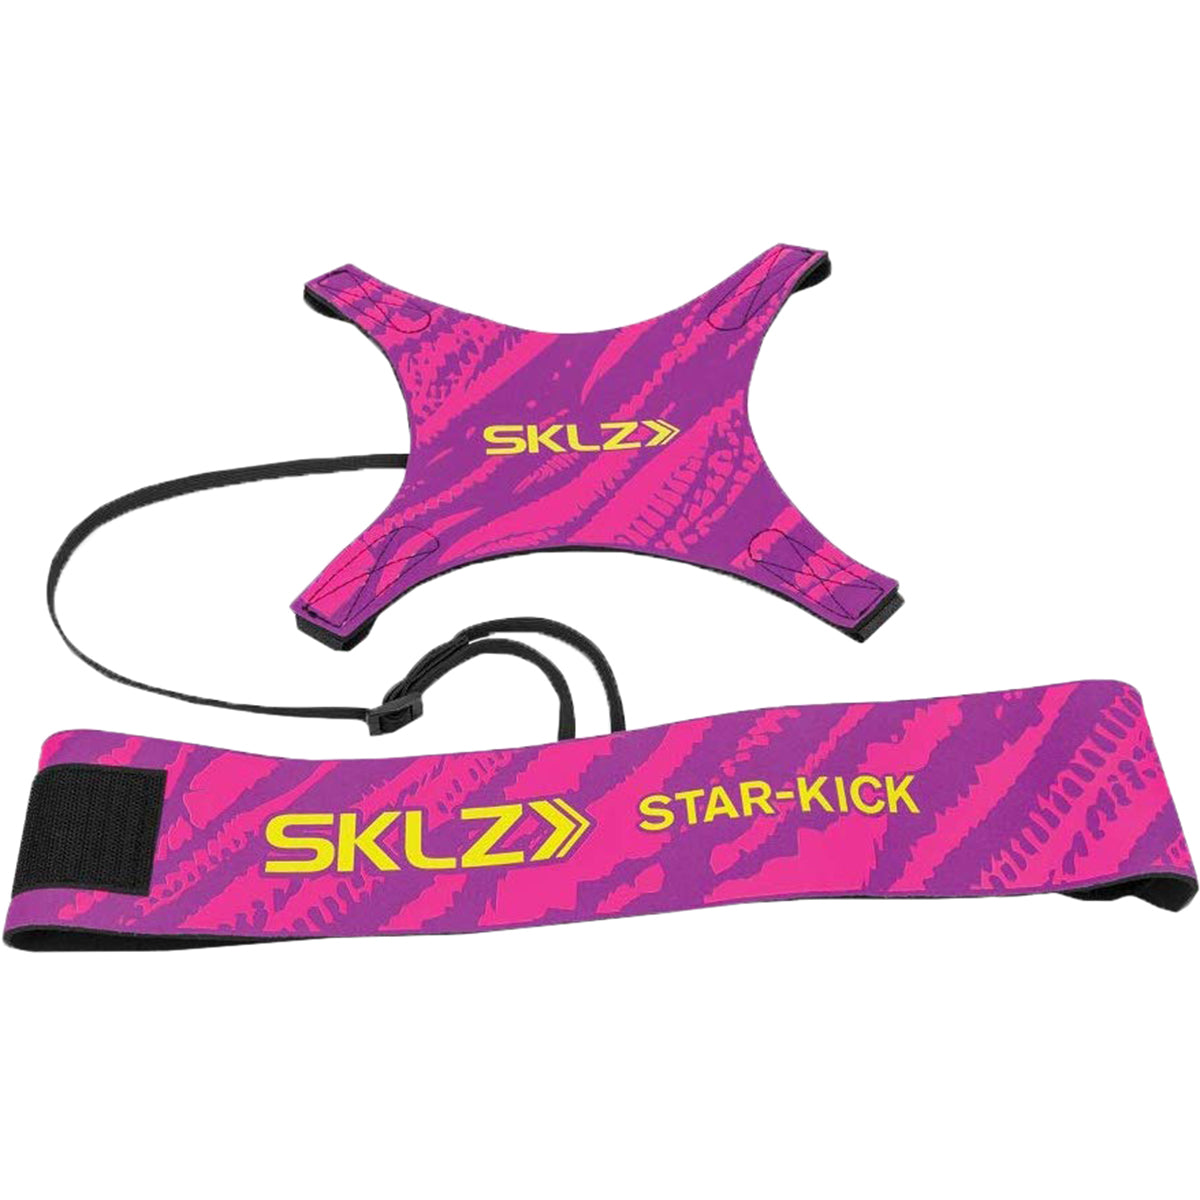 SKLZ Star-Kick Solo Soccer Trainer - Pink SKLZ